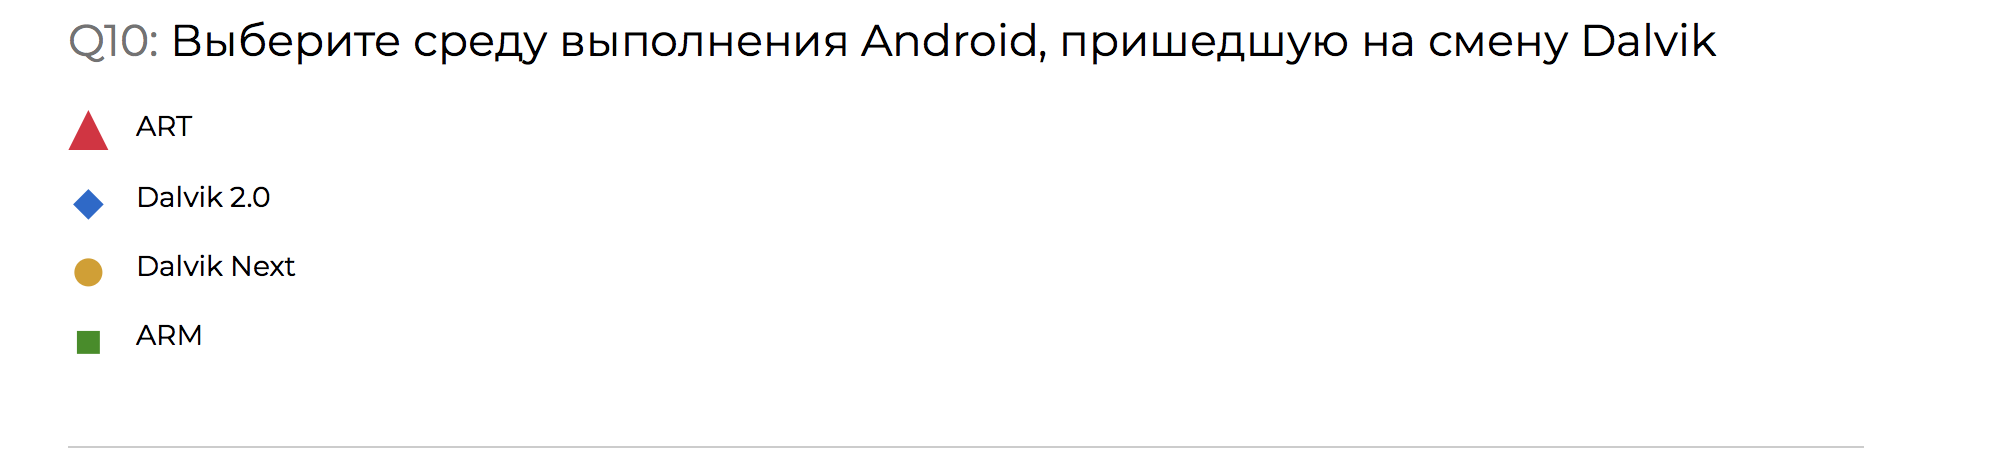 Разбор конкурса-квиза по Android со стенда HeadHunter на Mobius 2018 Moscow - 21